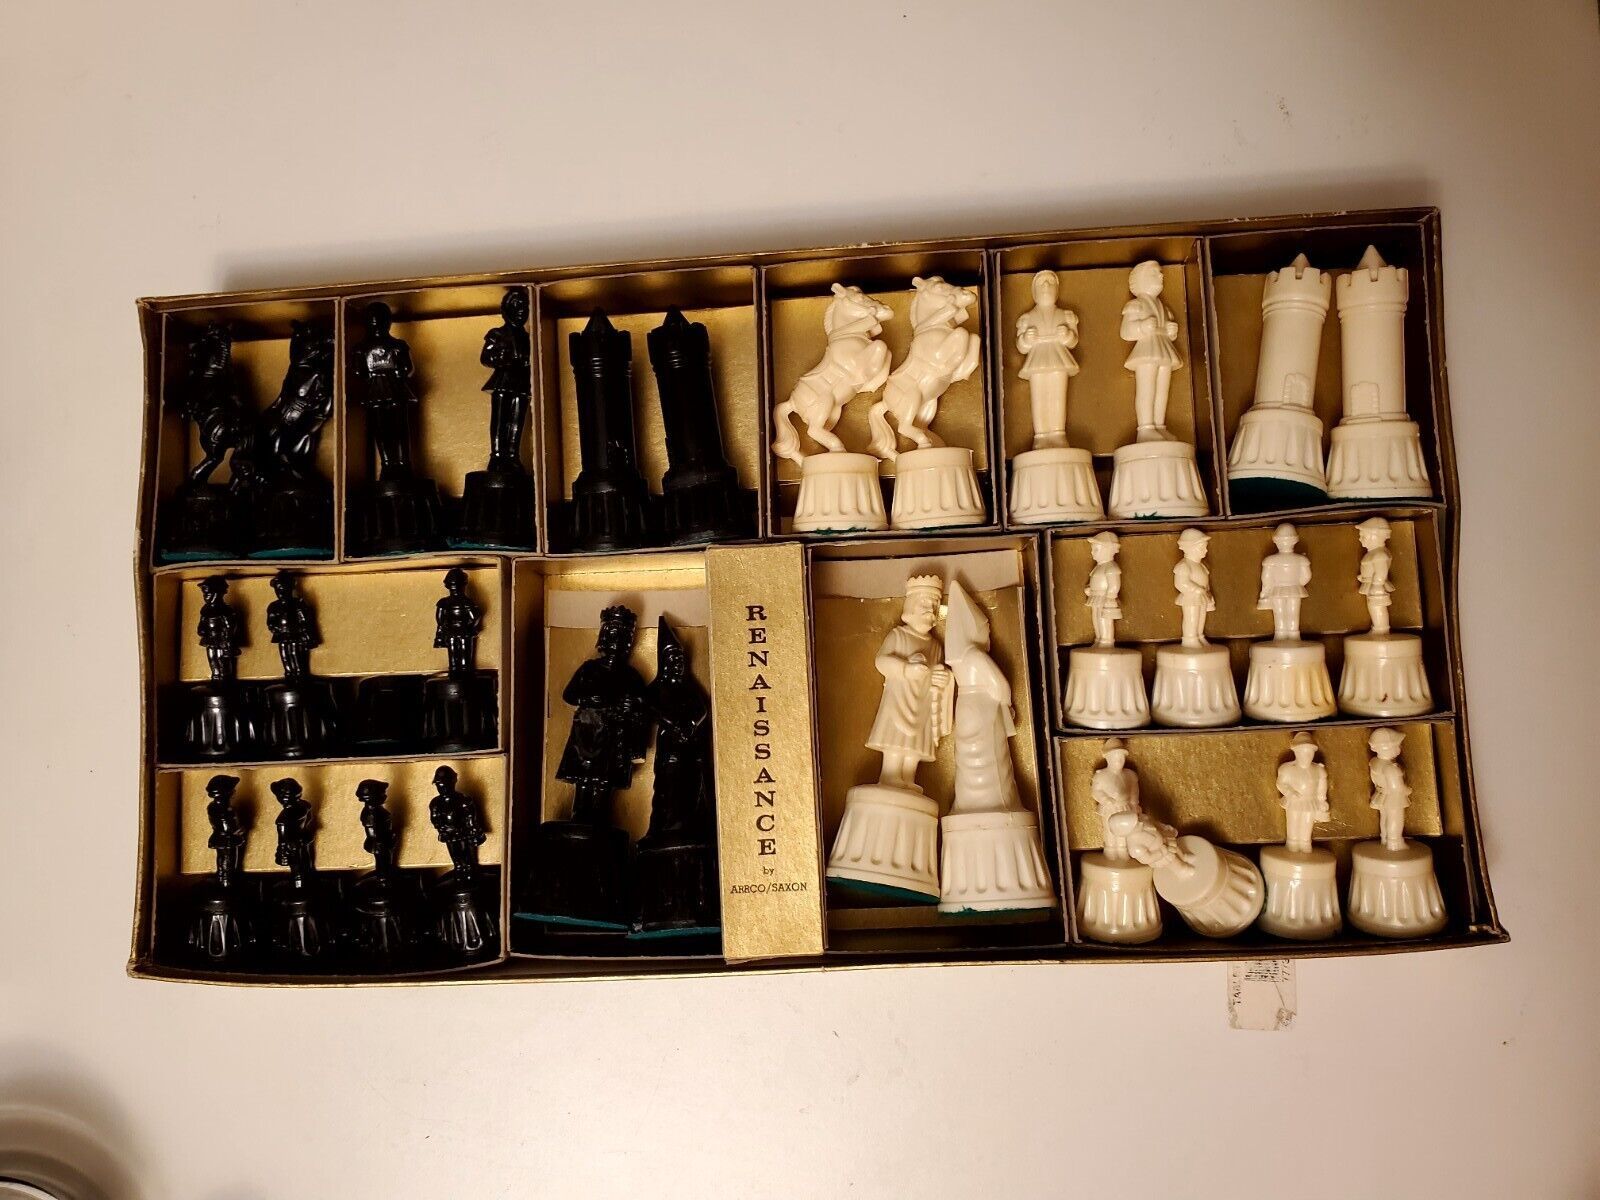 Vintage Renaissance Chess Pieces by ARRCO SAXON 1 Damaged piece - $29.13